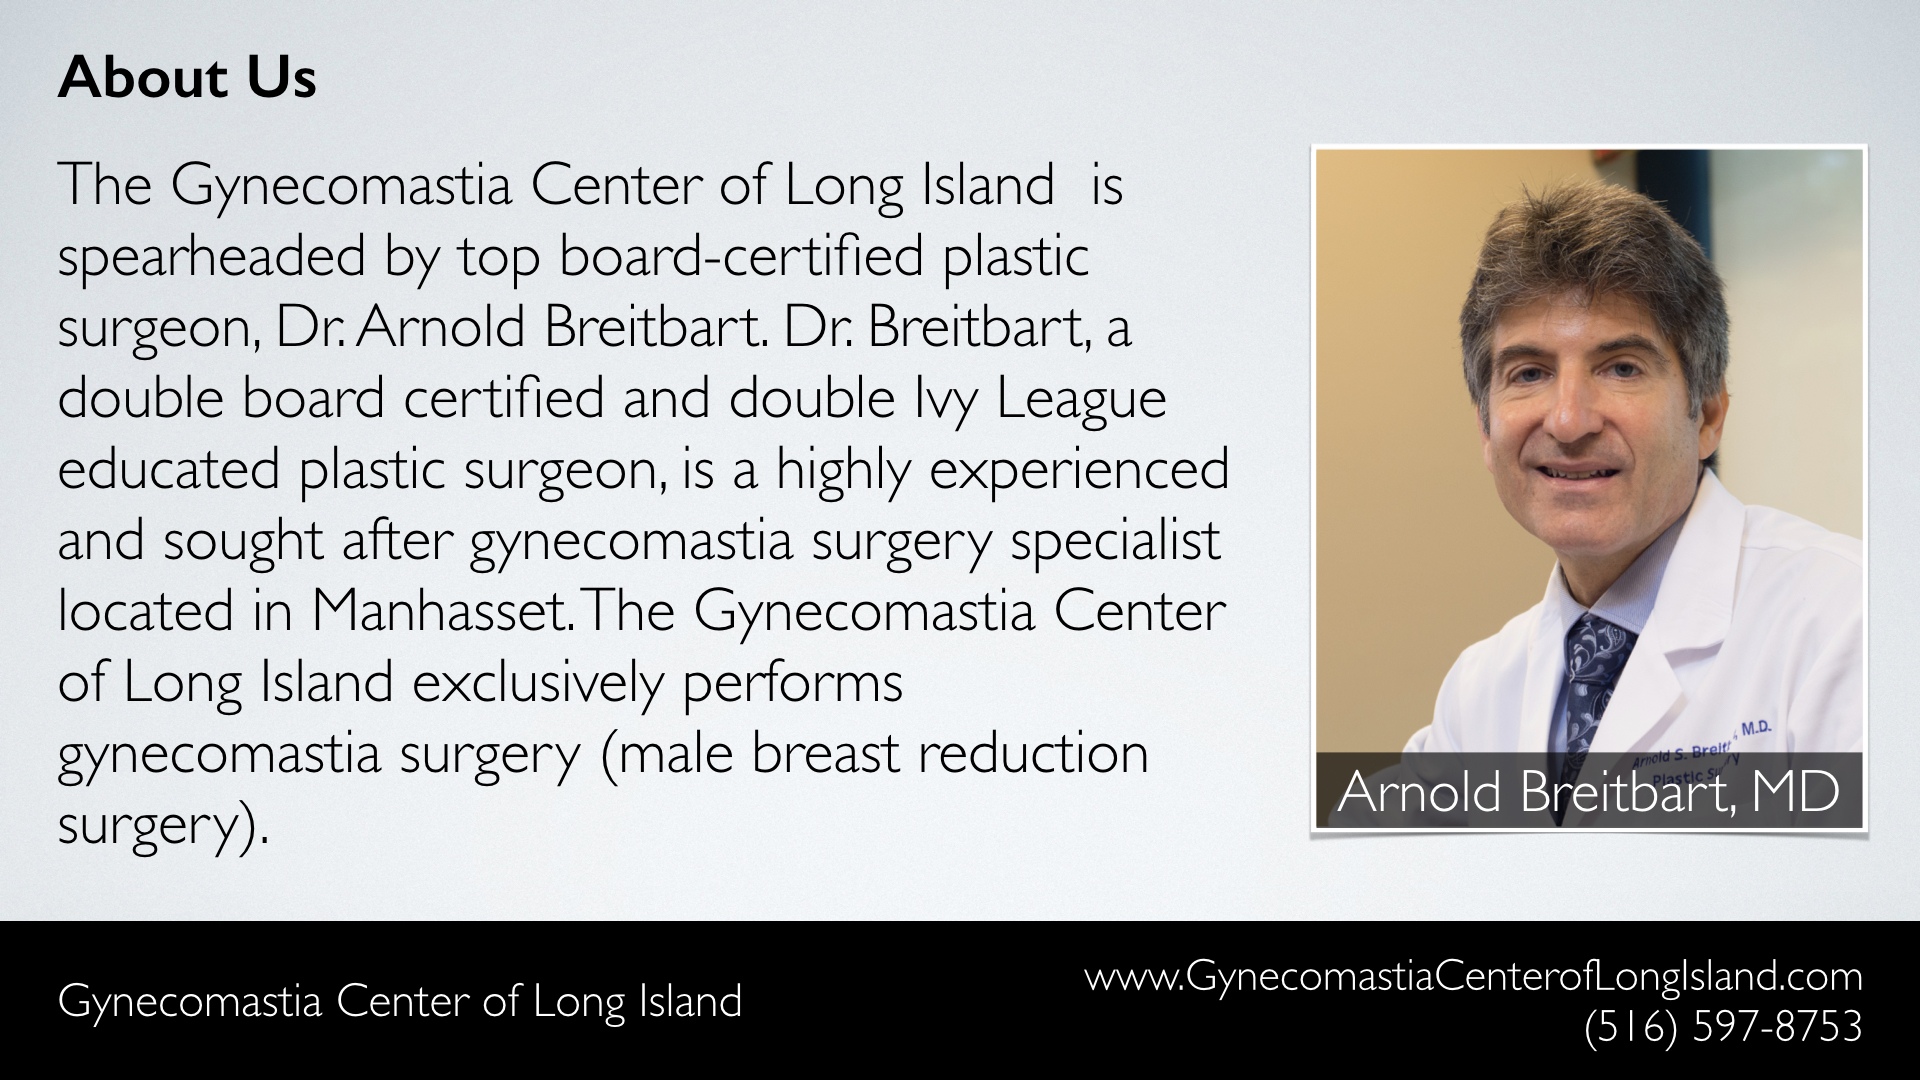 Gynecomastia Center of Long Island (Manhasset NY) - About Us